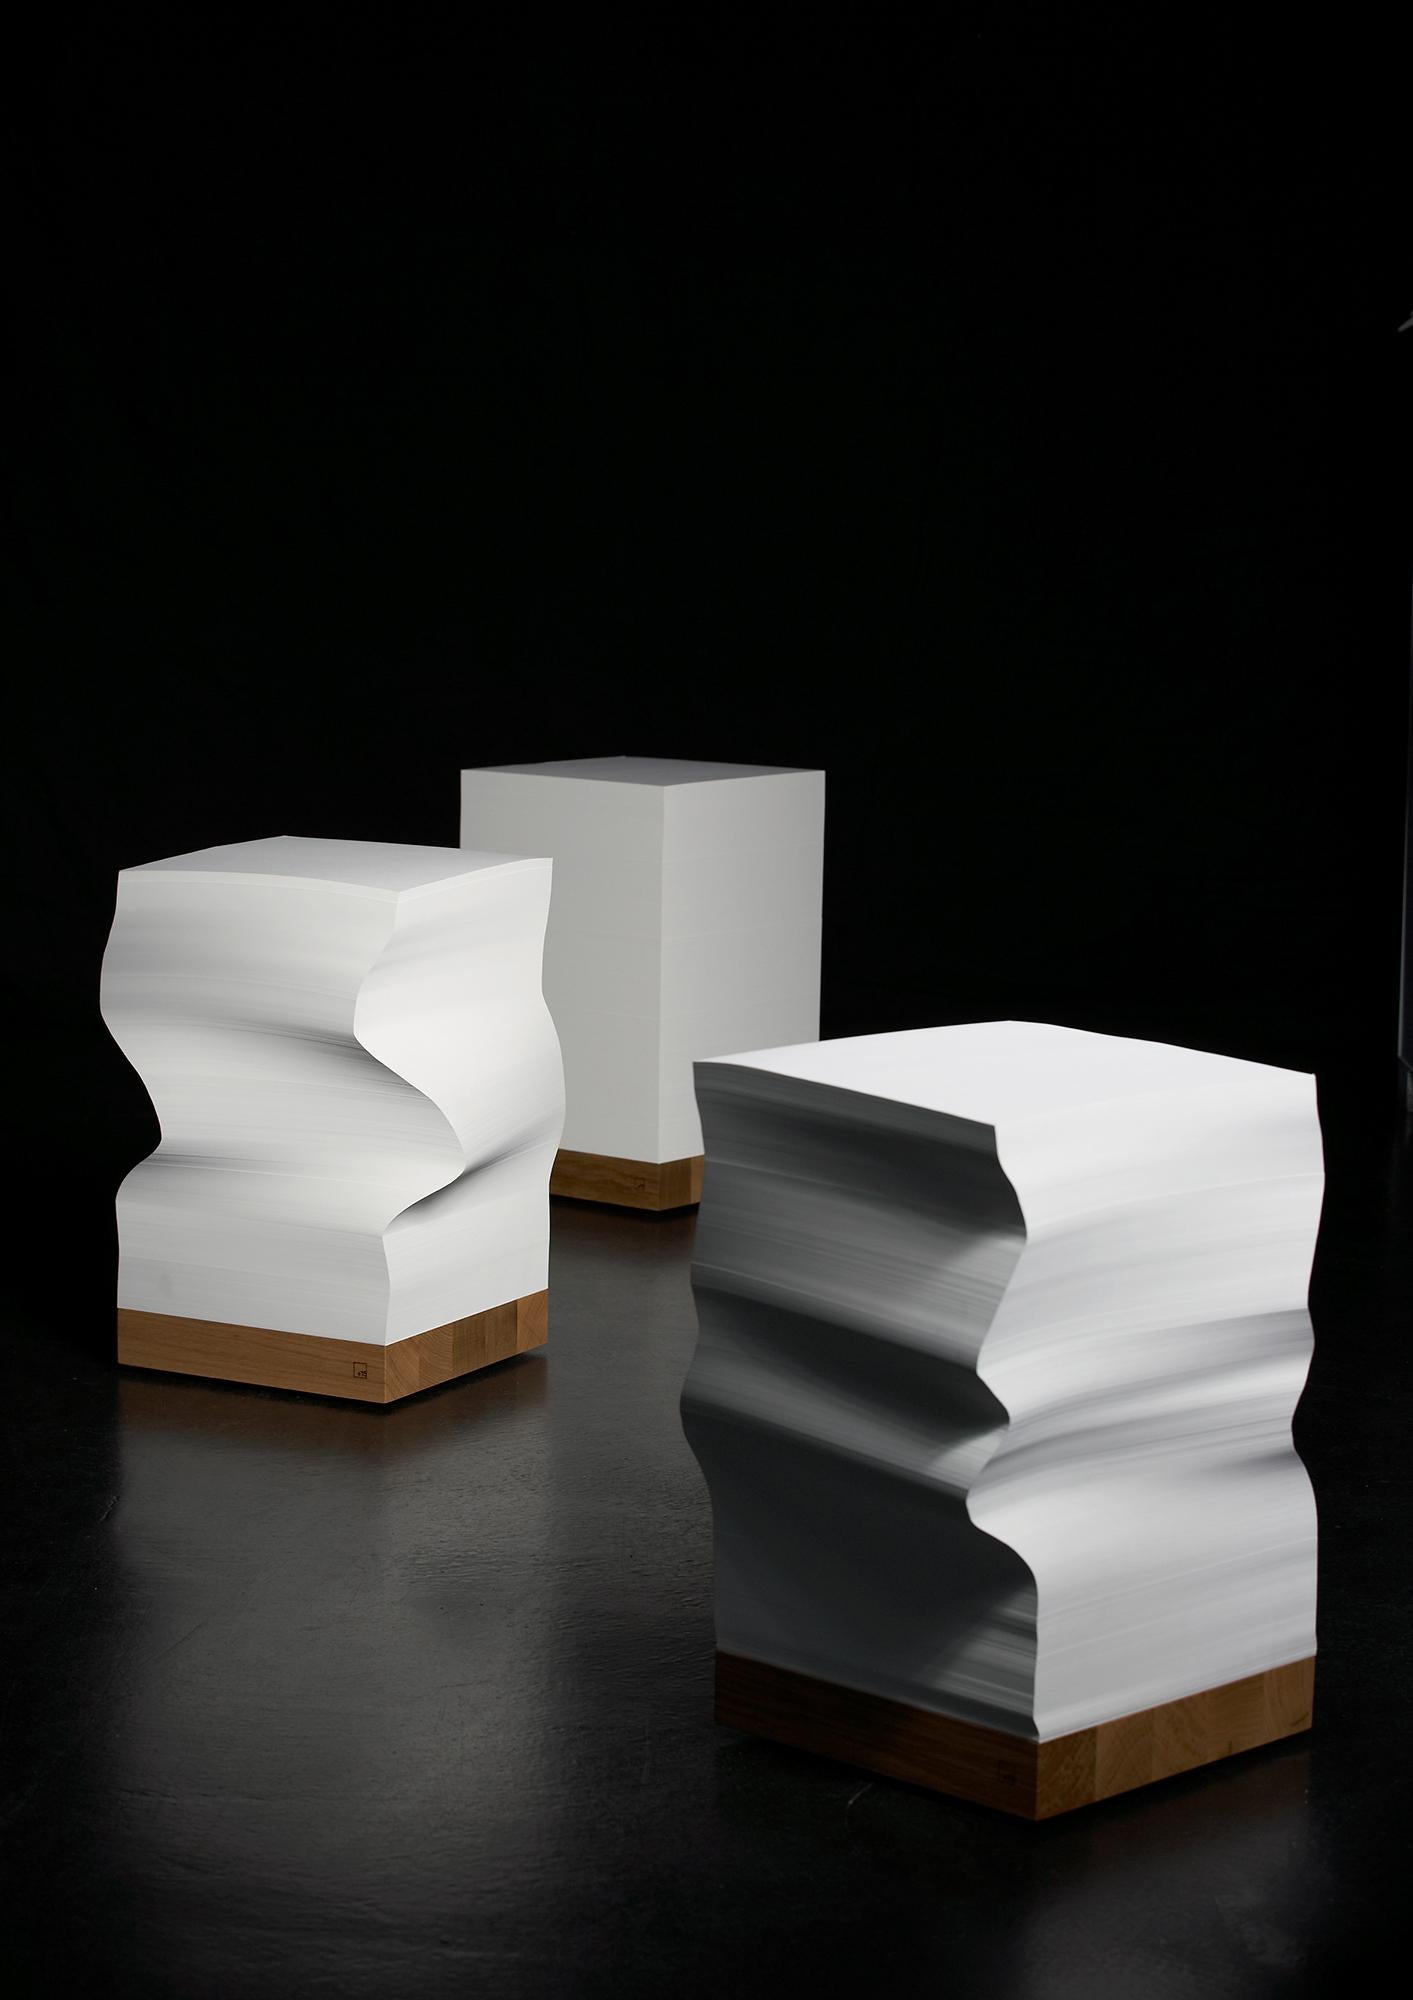 Modern e15 Selected Munken Cube in Paper & Oak by Philipp Mainzer & Juno